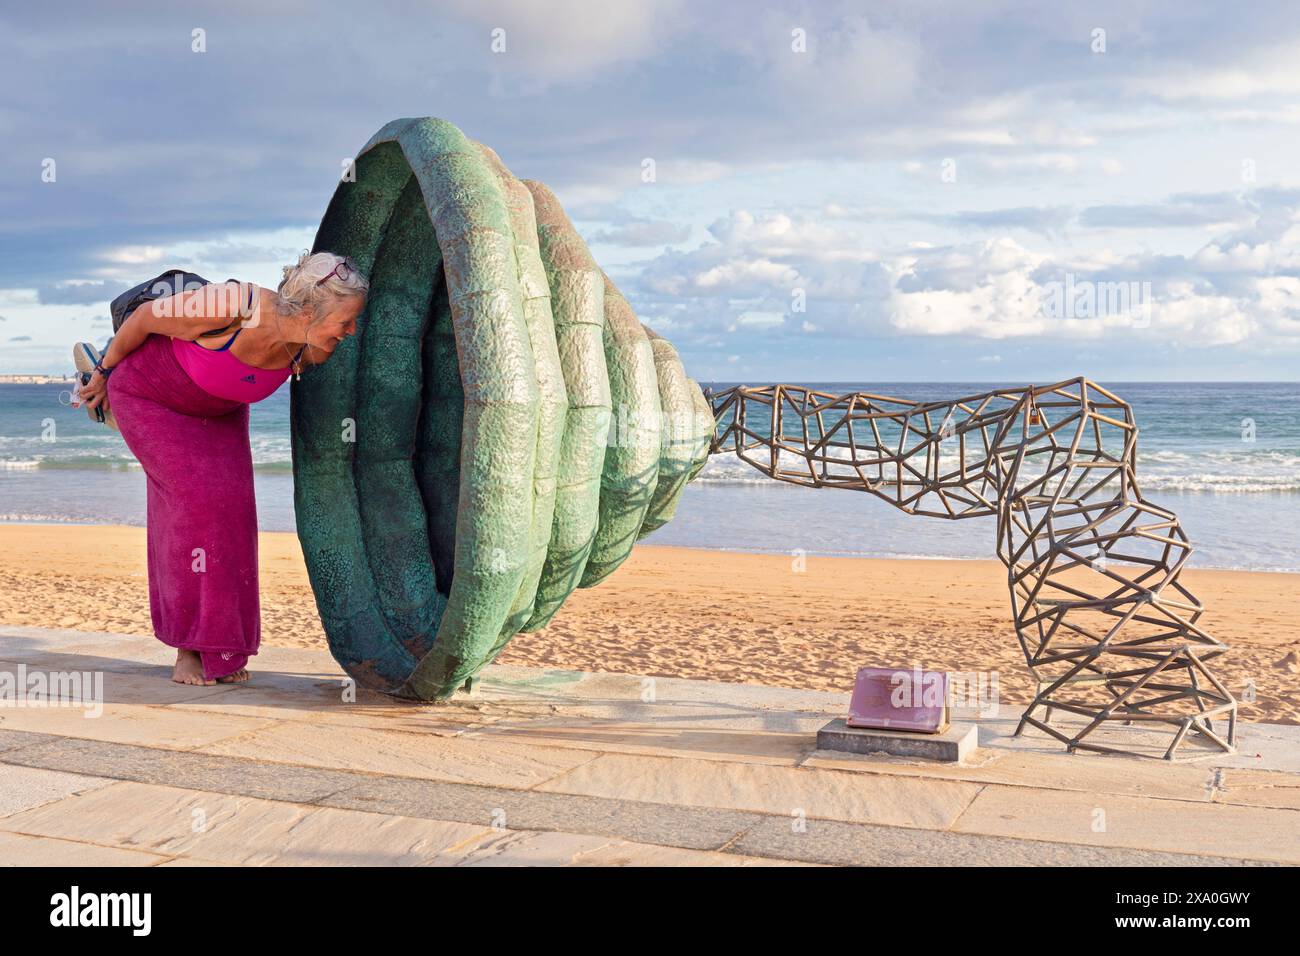 Europa, Spanien, Gipuzkoa, Zarautz Beach mit einer Hornskulptur, die von einer Touristenfrau untersucht wird Stockfoto